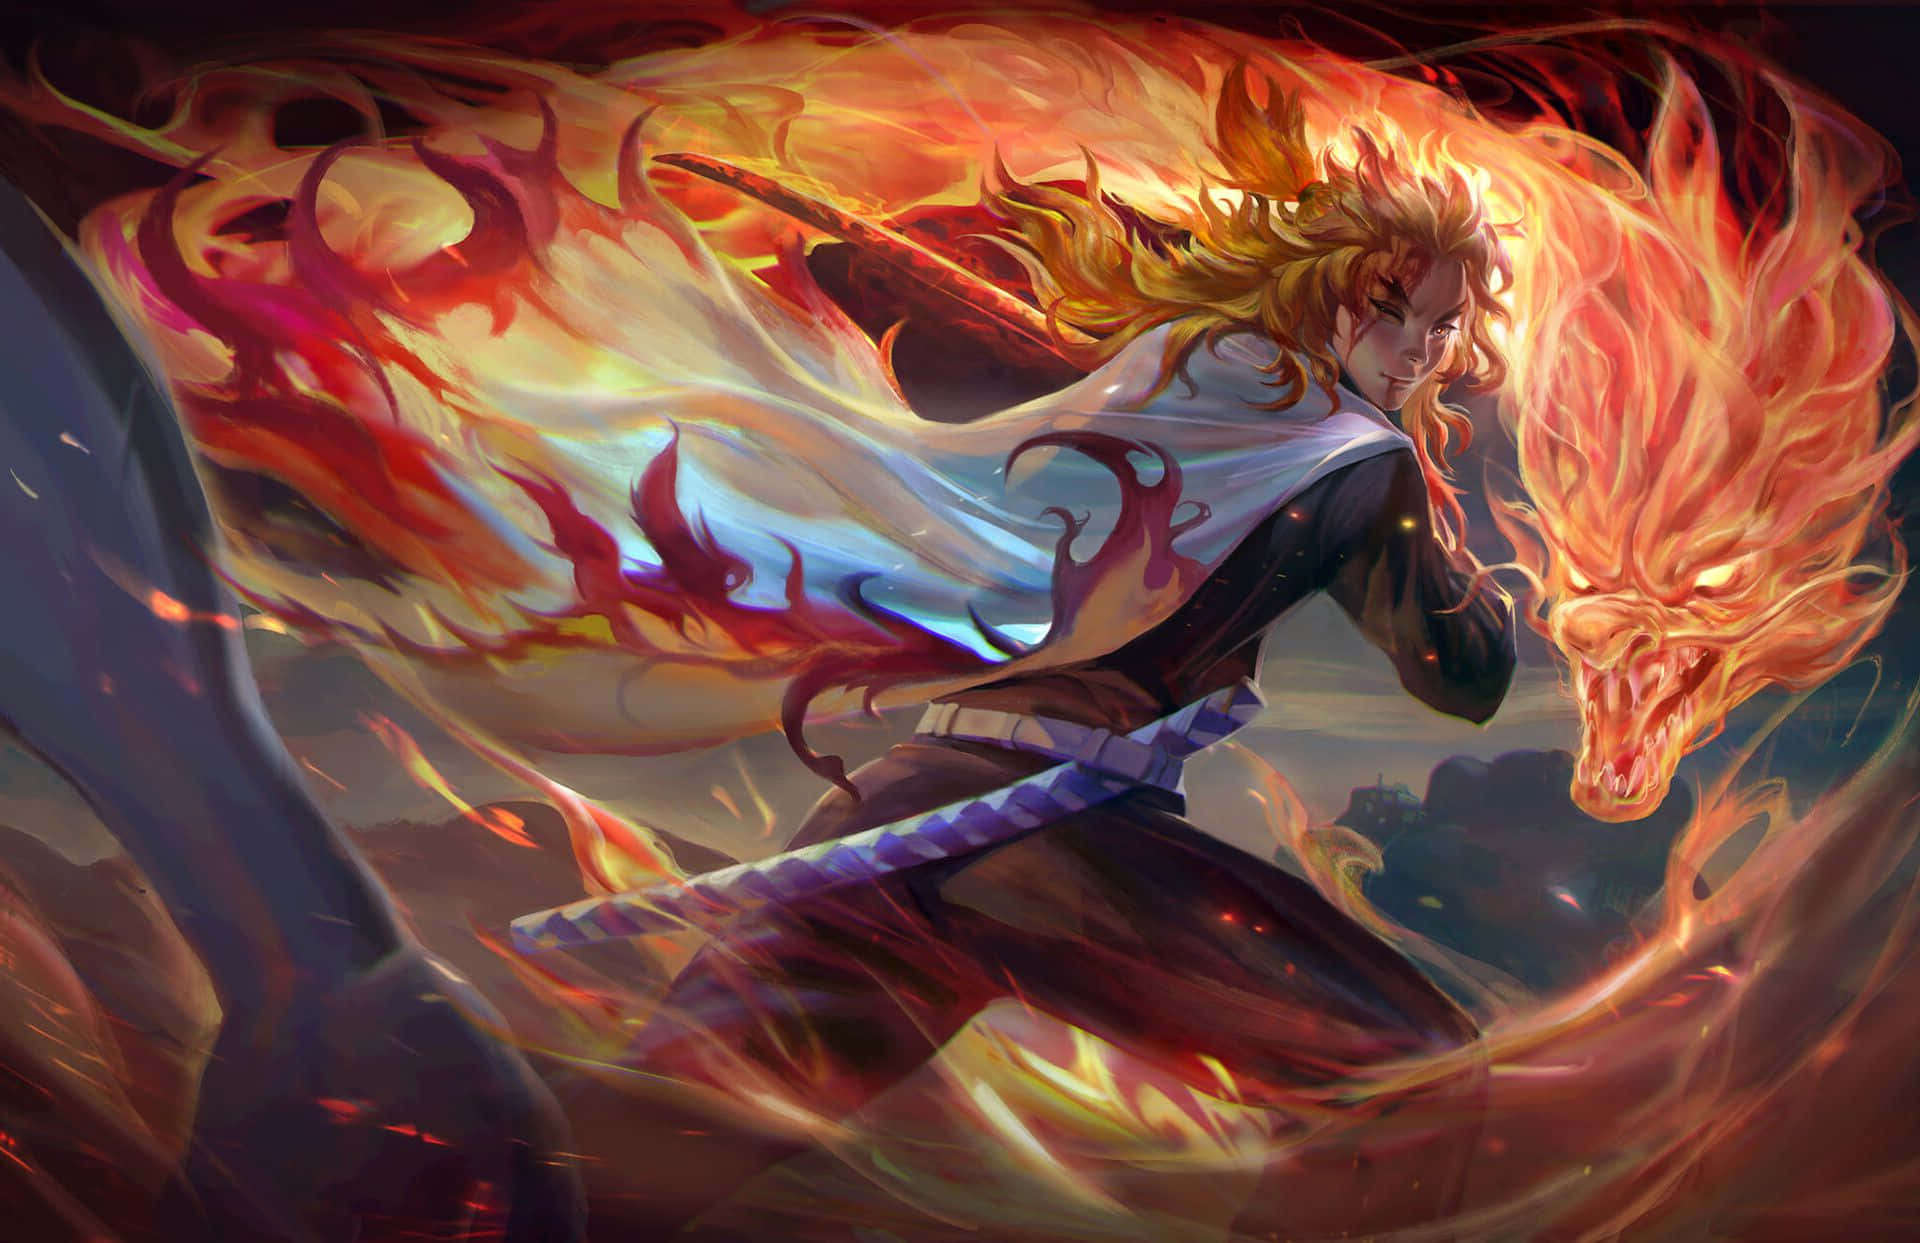 Flames of Rengoku - Undefeated Hero of the Demon Slayer Corps